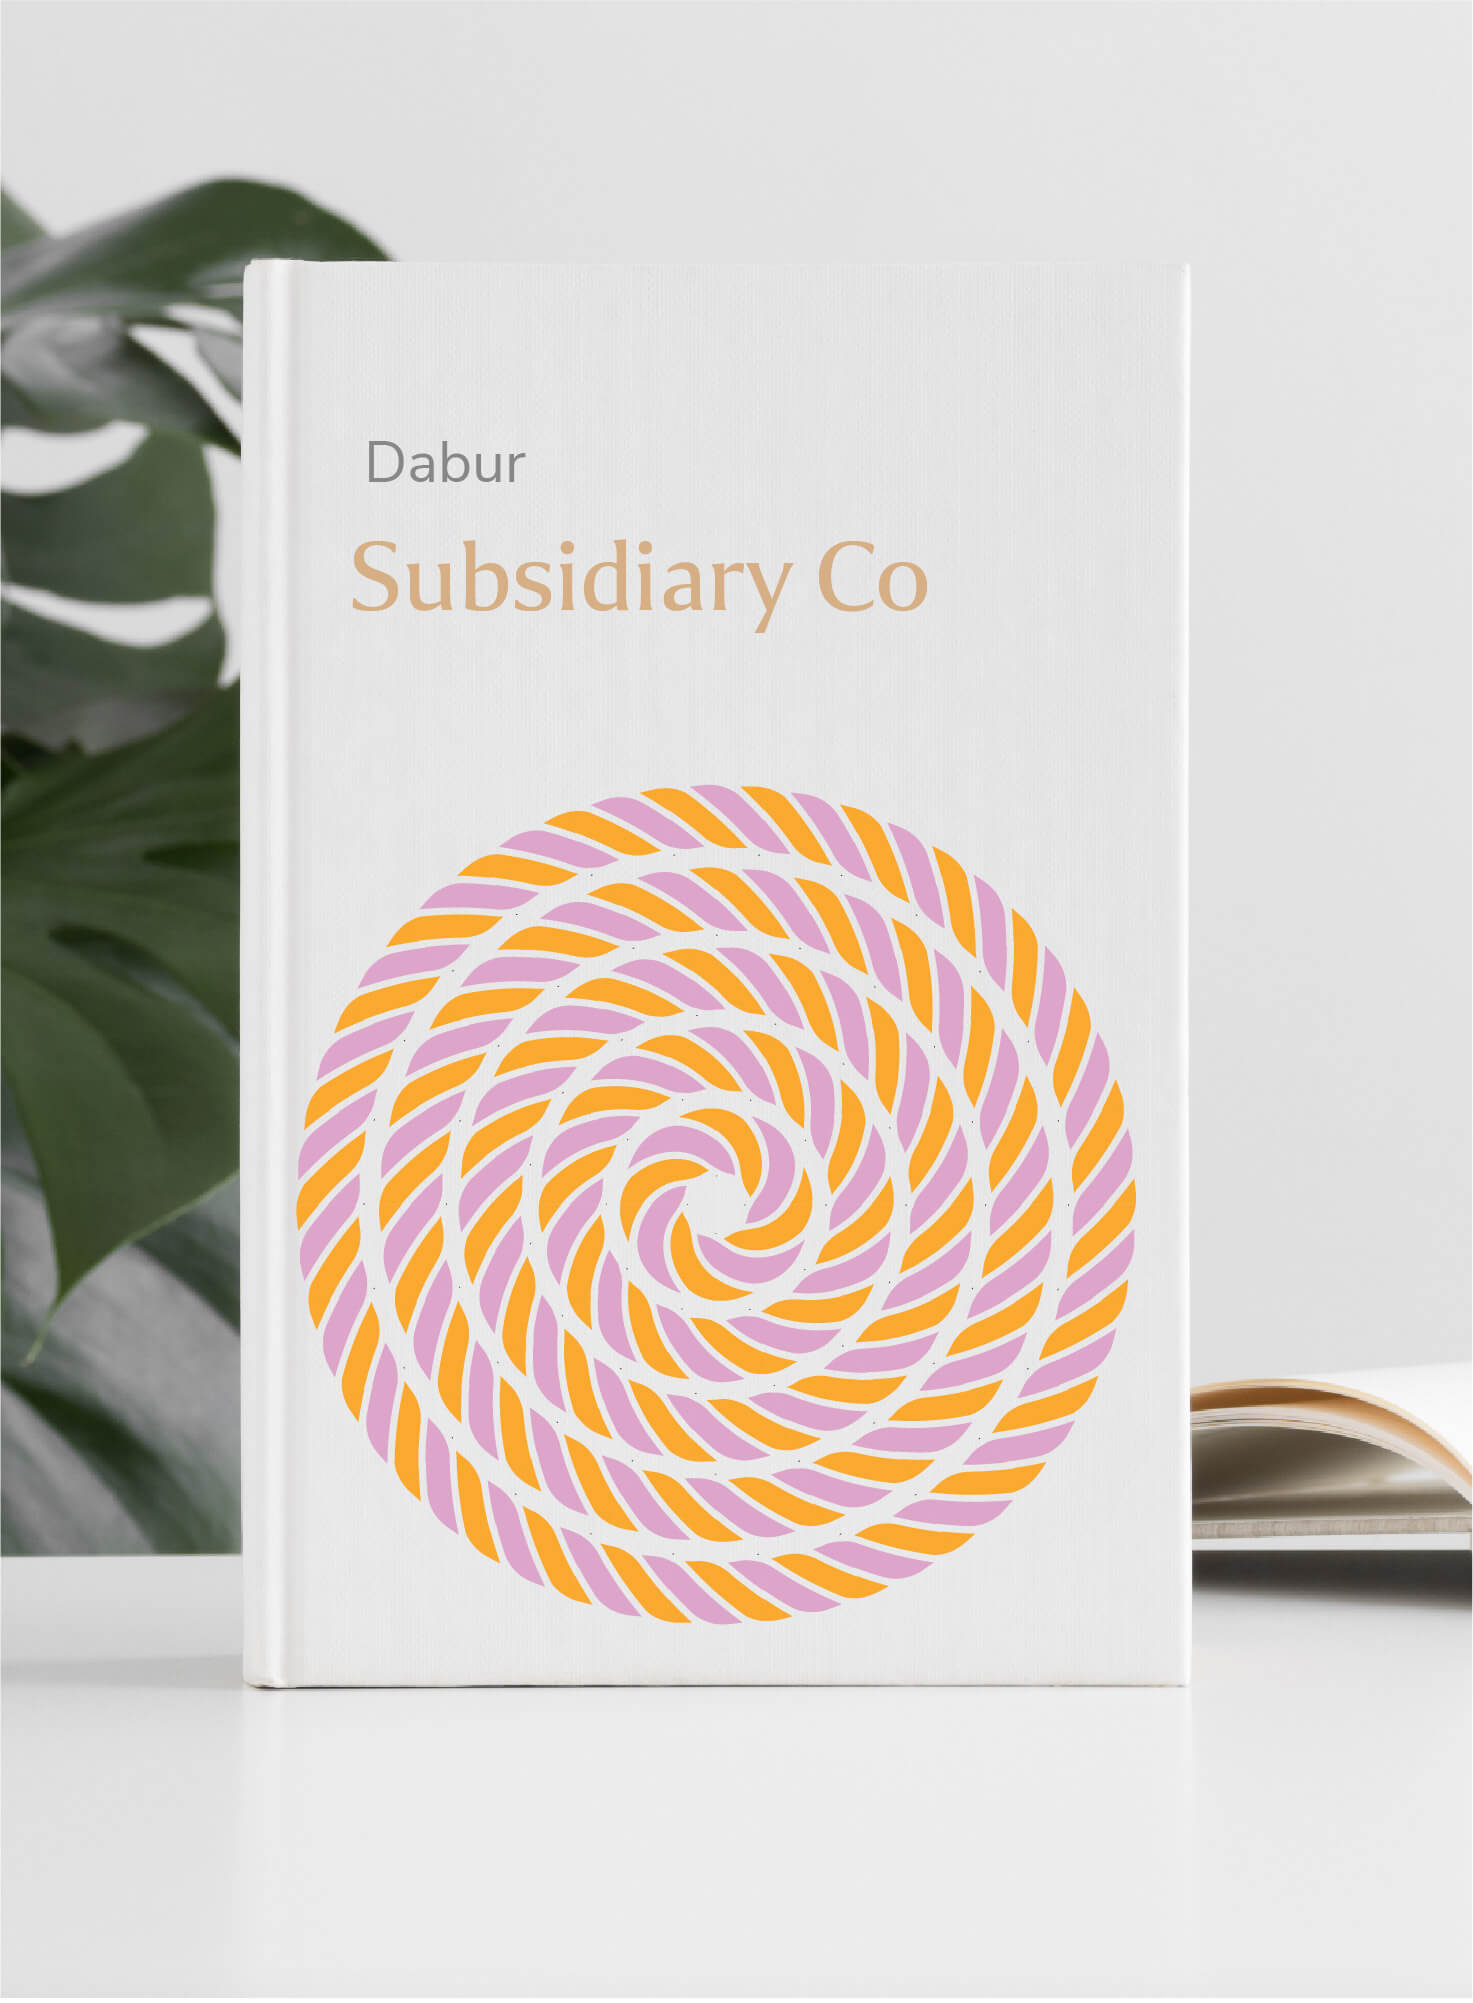 Subsidiary Co